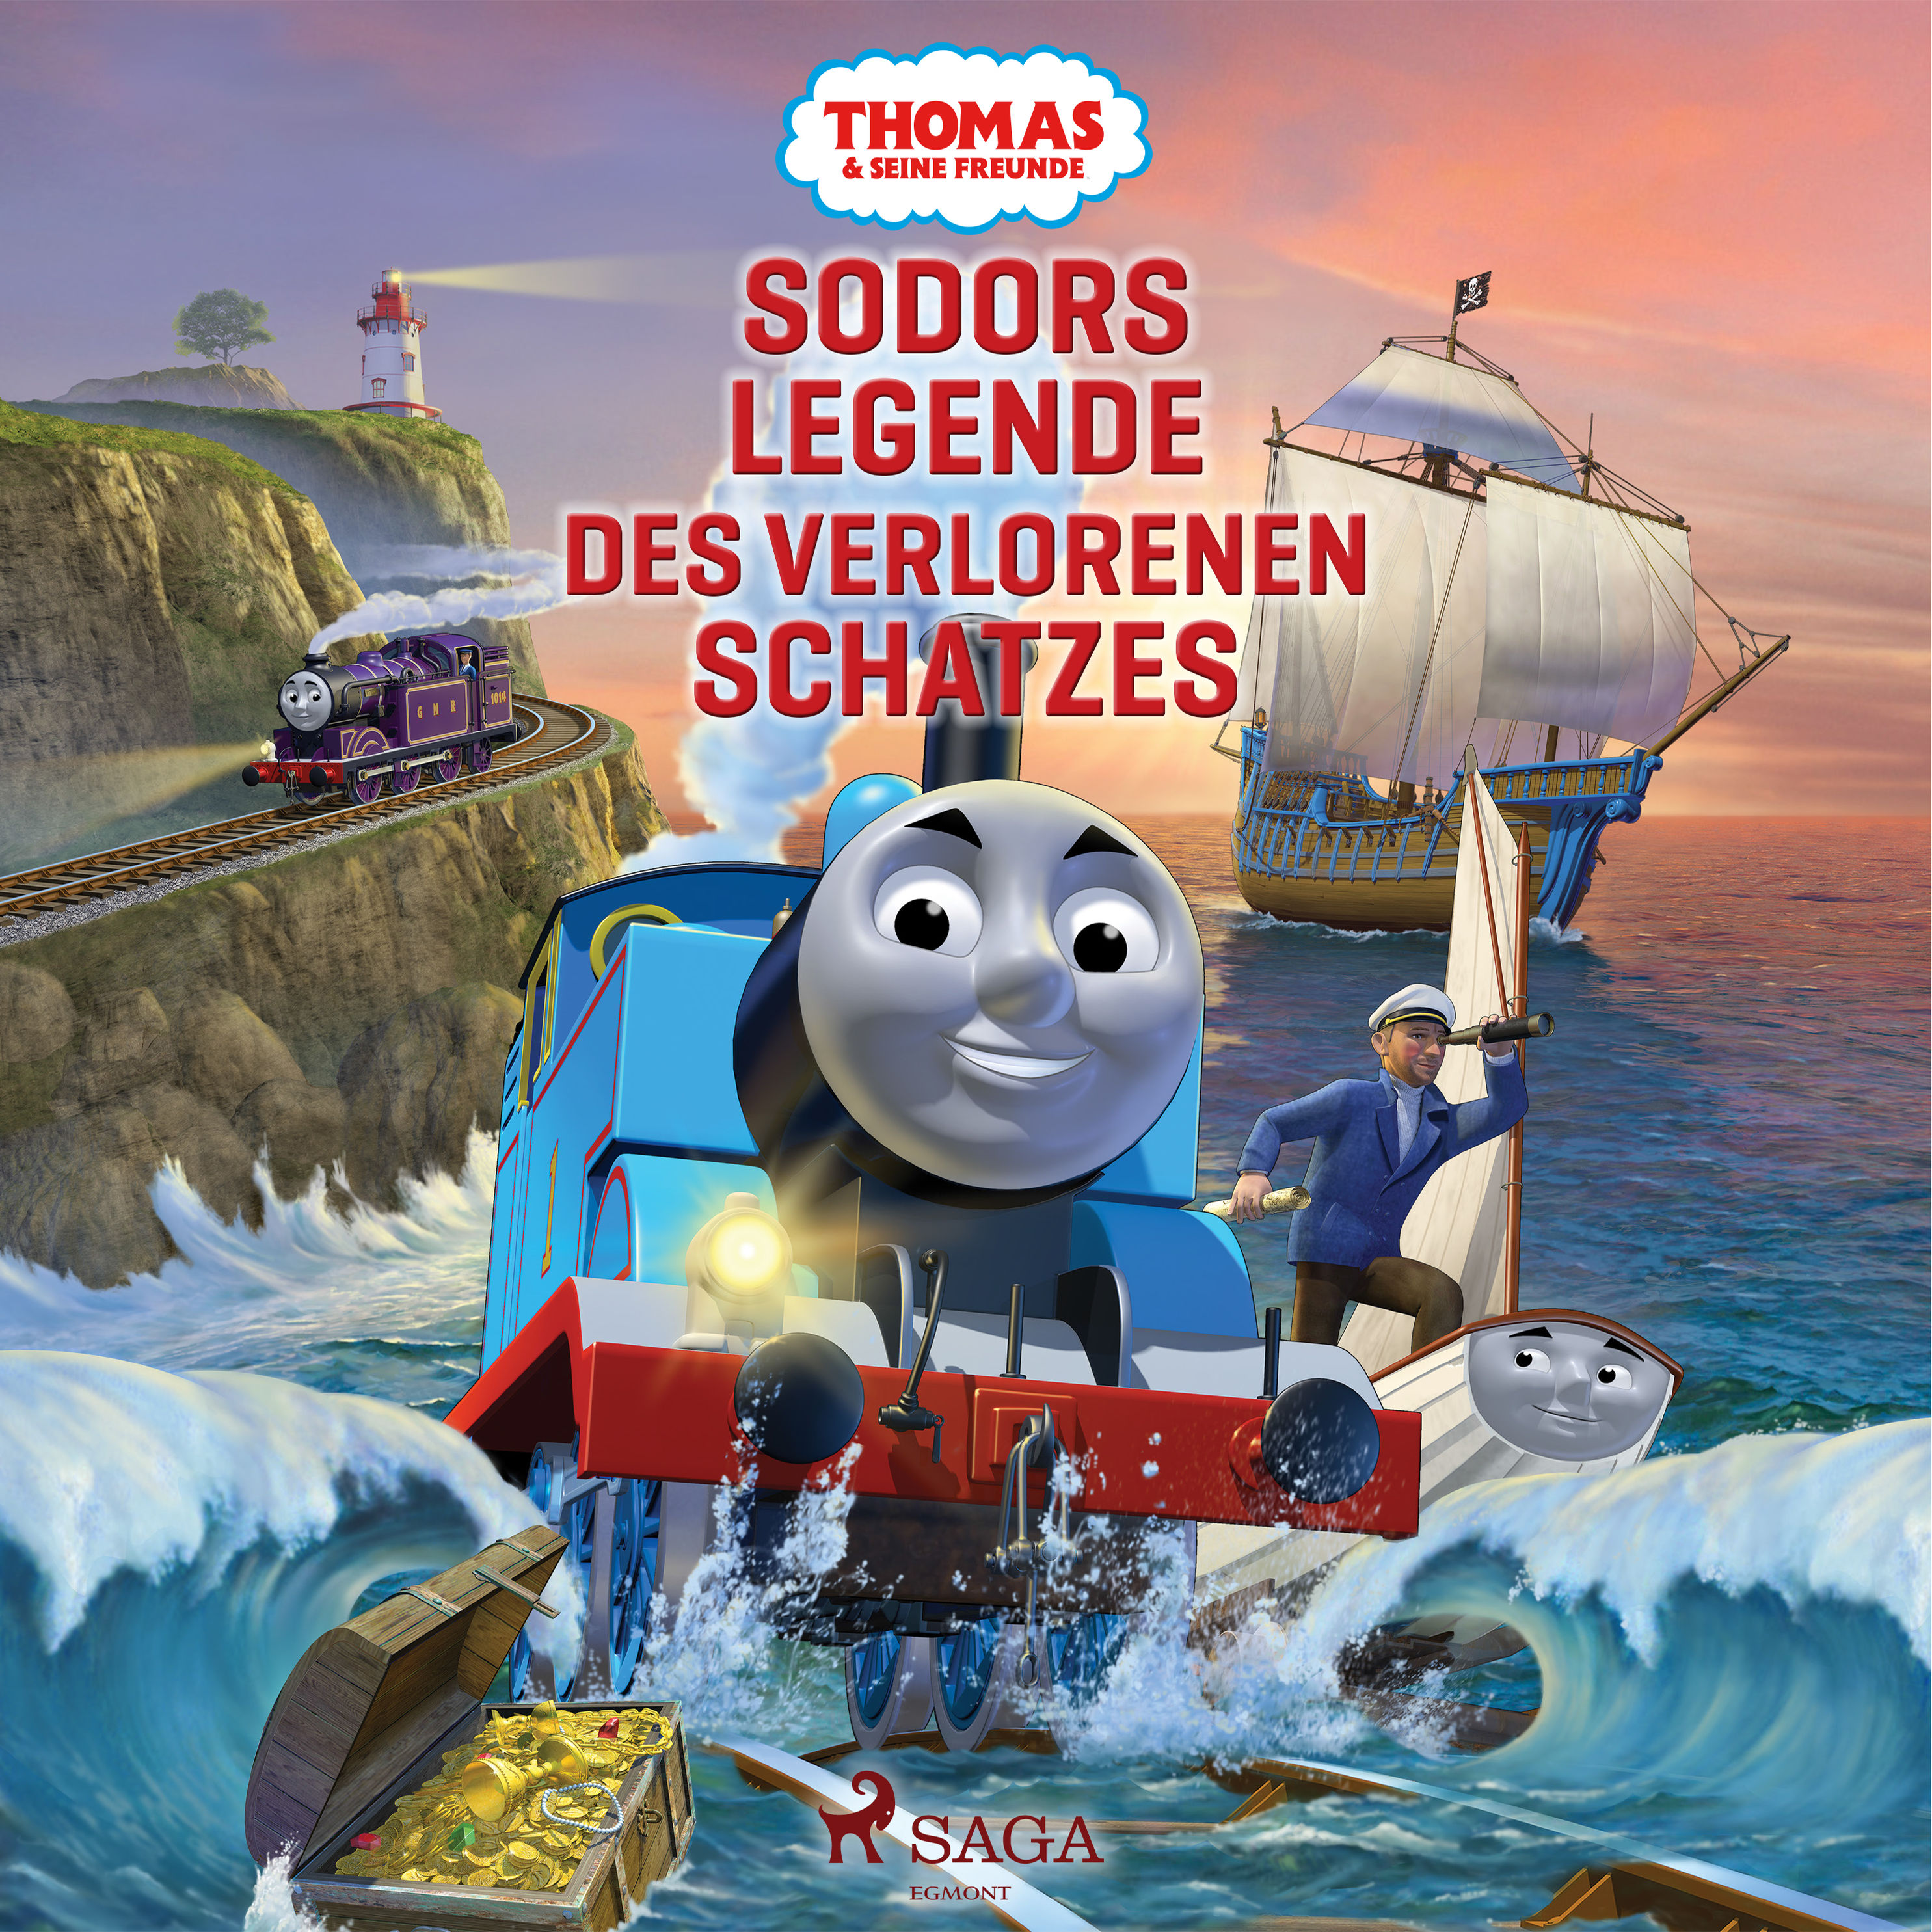 Thomas and Friends - Thomas und seine Freunde - Sodors Legende des  verlorenen Schatzes Hörbuch Download